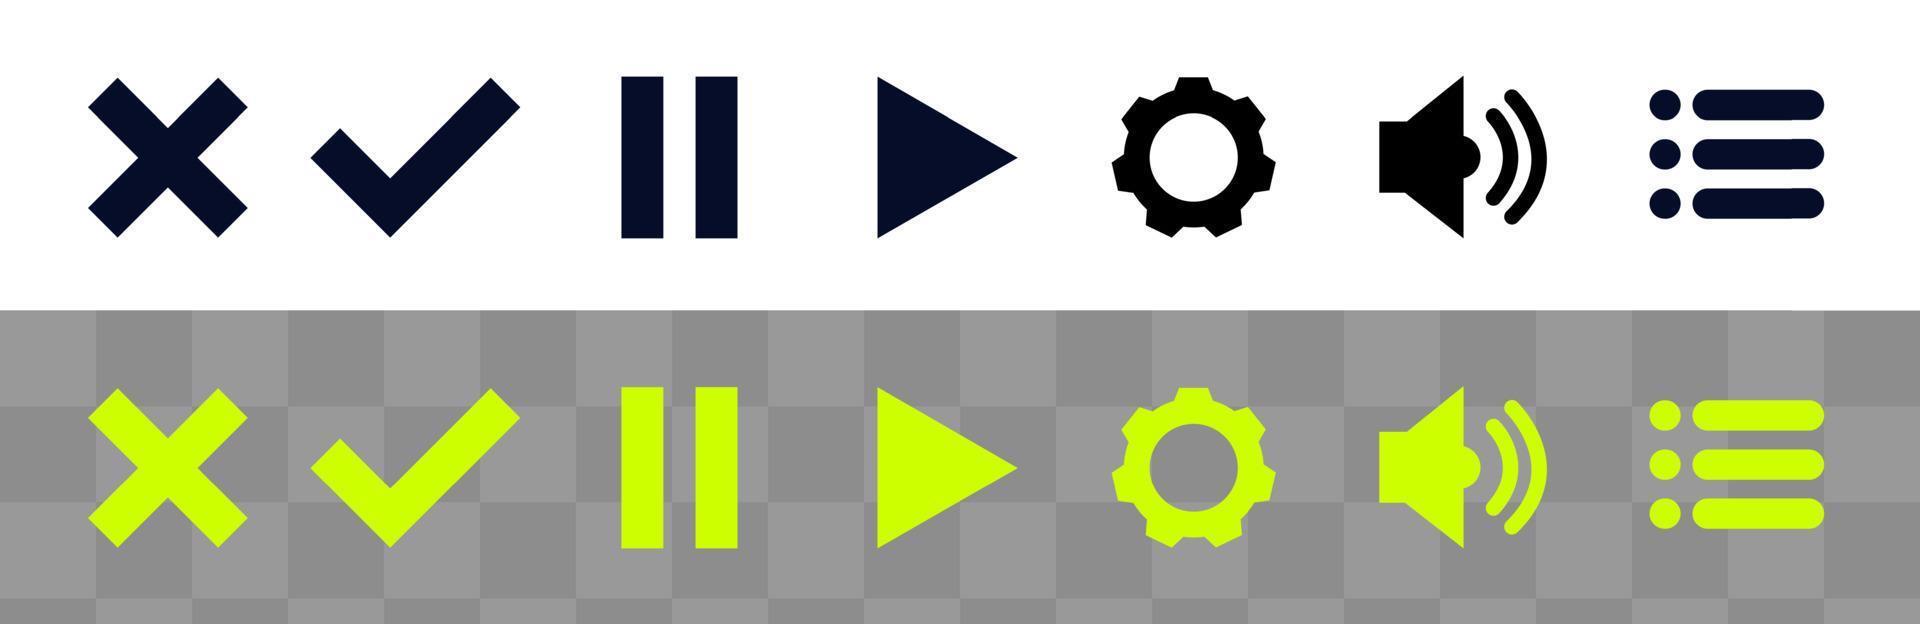 ikon för knappar användargränssnitt design i spel videospelare eller webbplats vektor